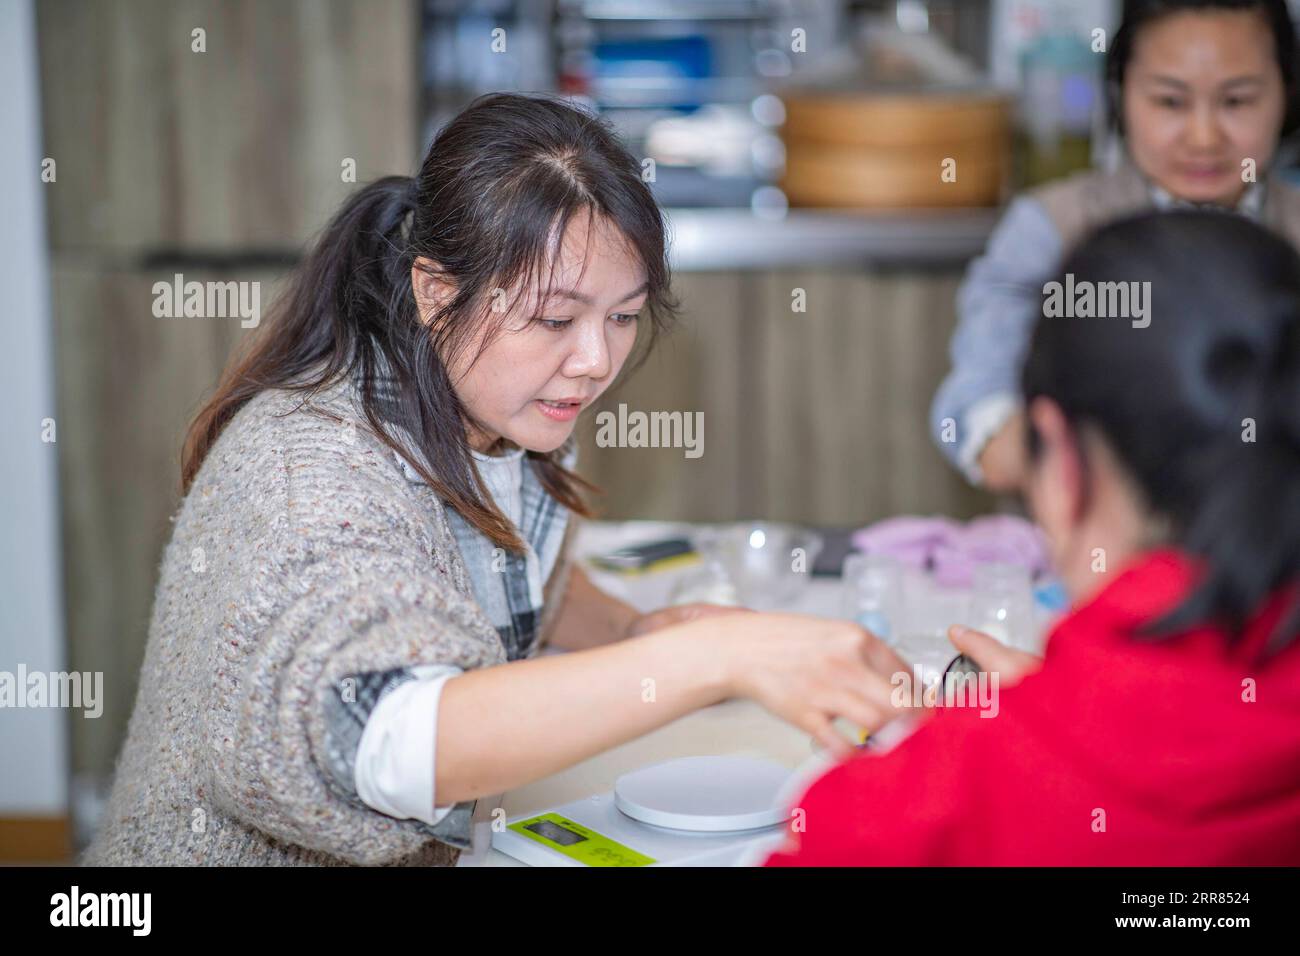 210418 -- CHONGQING, 18. April 2021 -- Ouyang Qinyun L lehrt Auszubildende in ihrem Atelier im Bezirk Yubei der südwestchinesischen Gemeinde Chongqing, 26. März 2021. Ein Bekleidungsdesigner, der in Chongqing zum Koch wurde, hat eine atemberaubende Chemie zwischen Kunst und gedämpftem Brötchen geschaffen. Ouyang Qinyun, 40, ist ein berühmter chinesischer Social-Media-Koch, der sich auf gedämpftes Brötchen oder Mantou auf Chinesisch spezialisiert hat. Mantou wird normalerweise aus Allzweckmehl, Hefe und Wasser hergestellt und ist ein Grundnahrungsmittel in China, insbesondere im Norden. Ich habe gelernt, dass gedämpfte Brötchen in verschiedene Formen verwandelt werden können. Das ist wirklich inspirierend Stockfoto